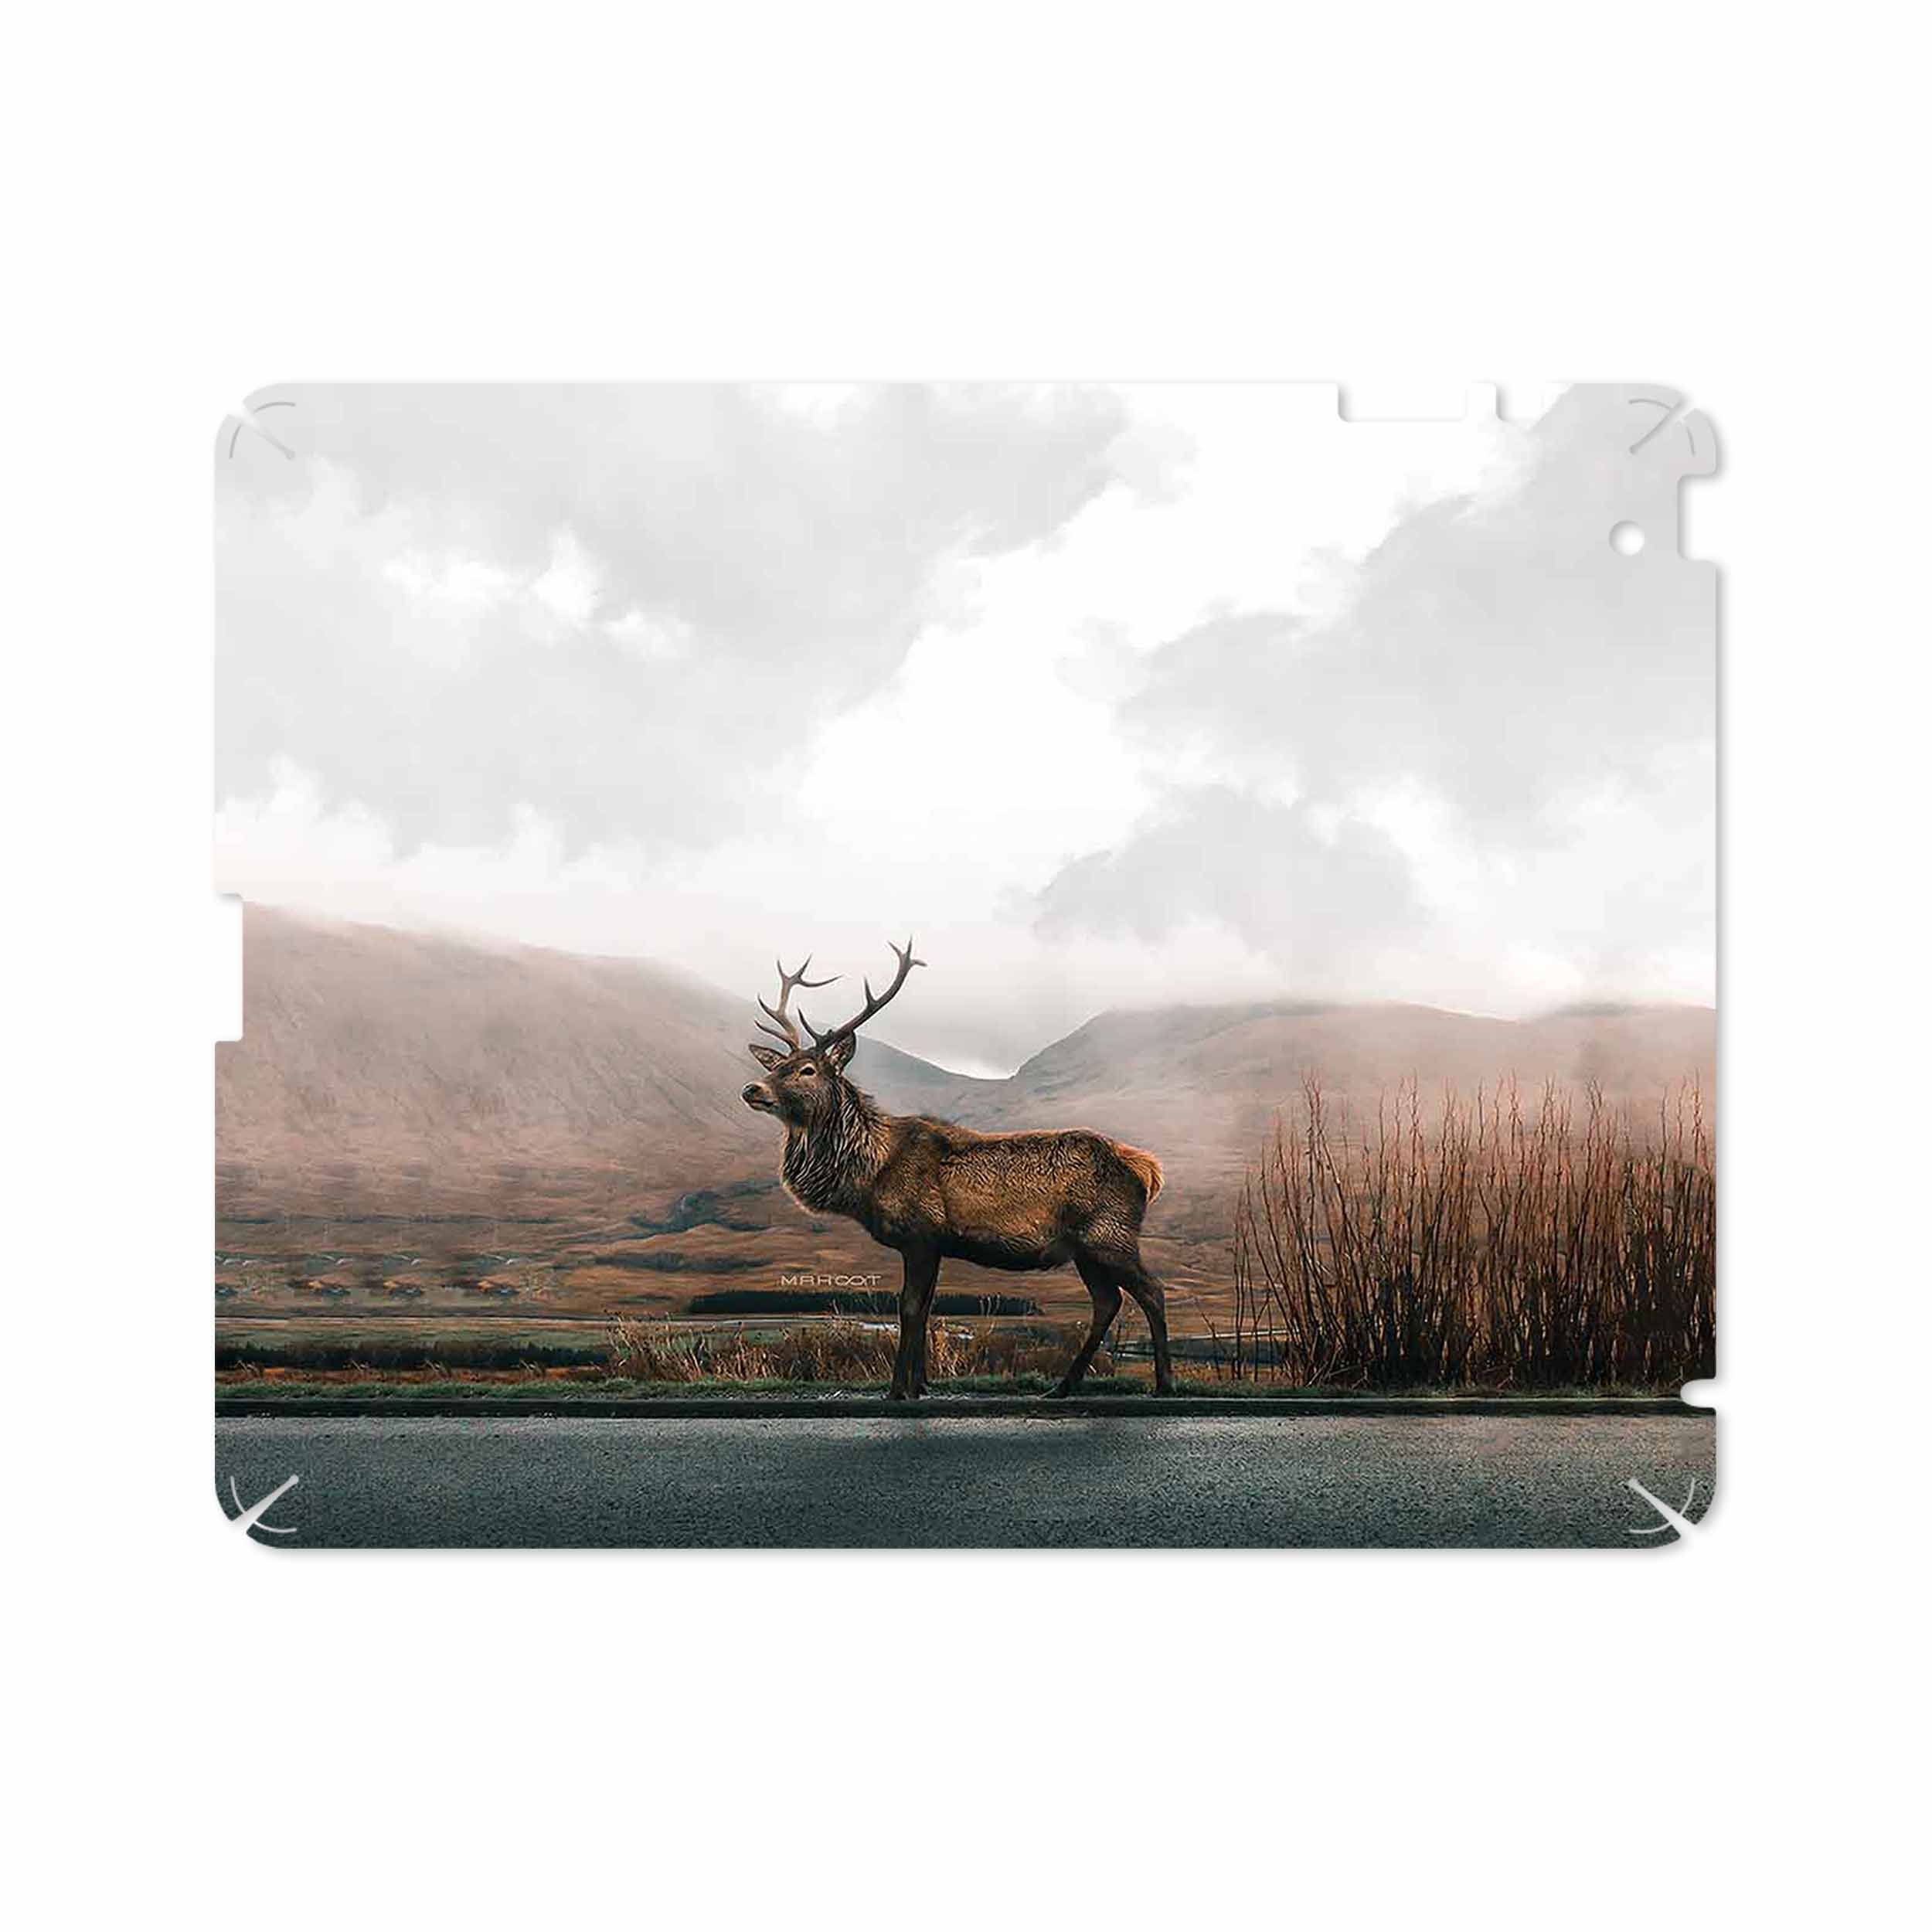 برچسب پوششی ماهوت مدل Horned Deer مناسب برای تبلت اپل iPad 2 2011 A1396